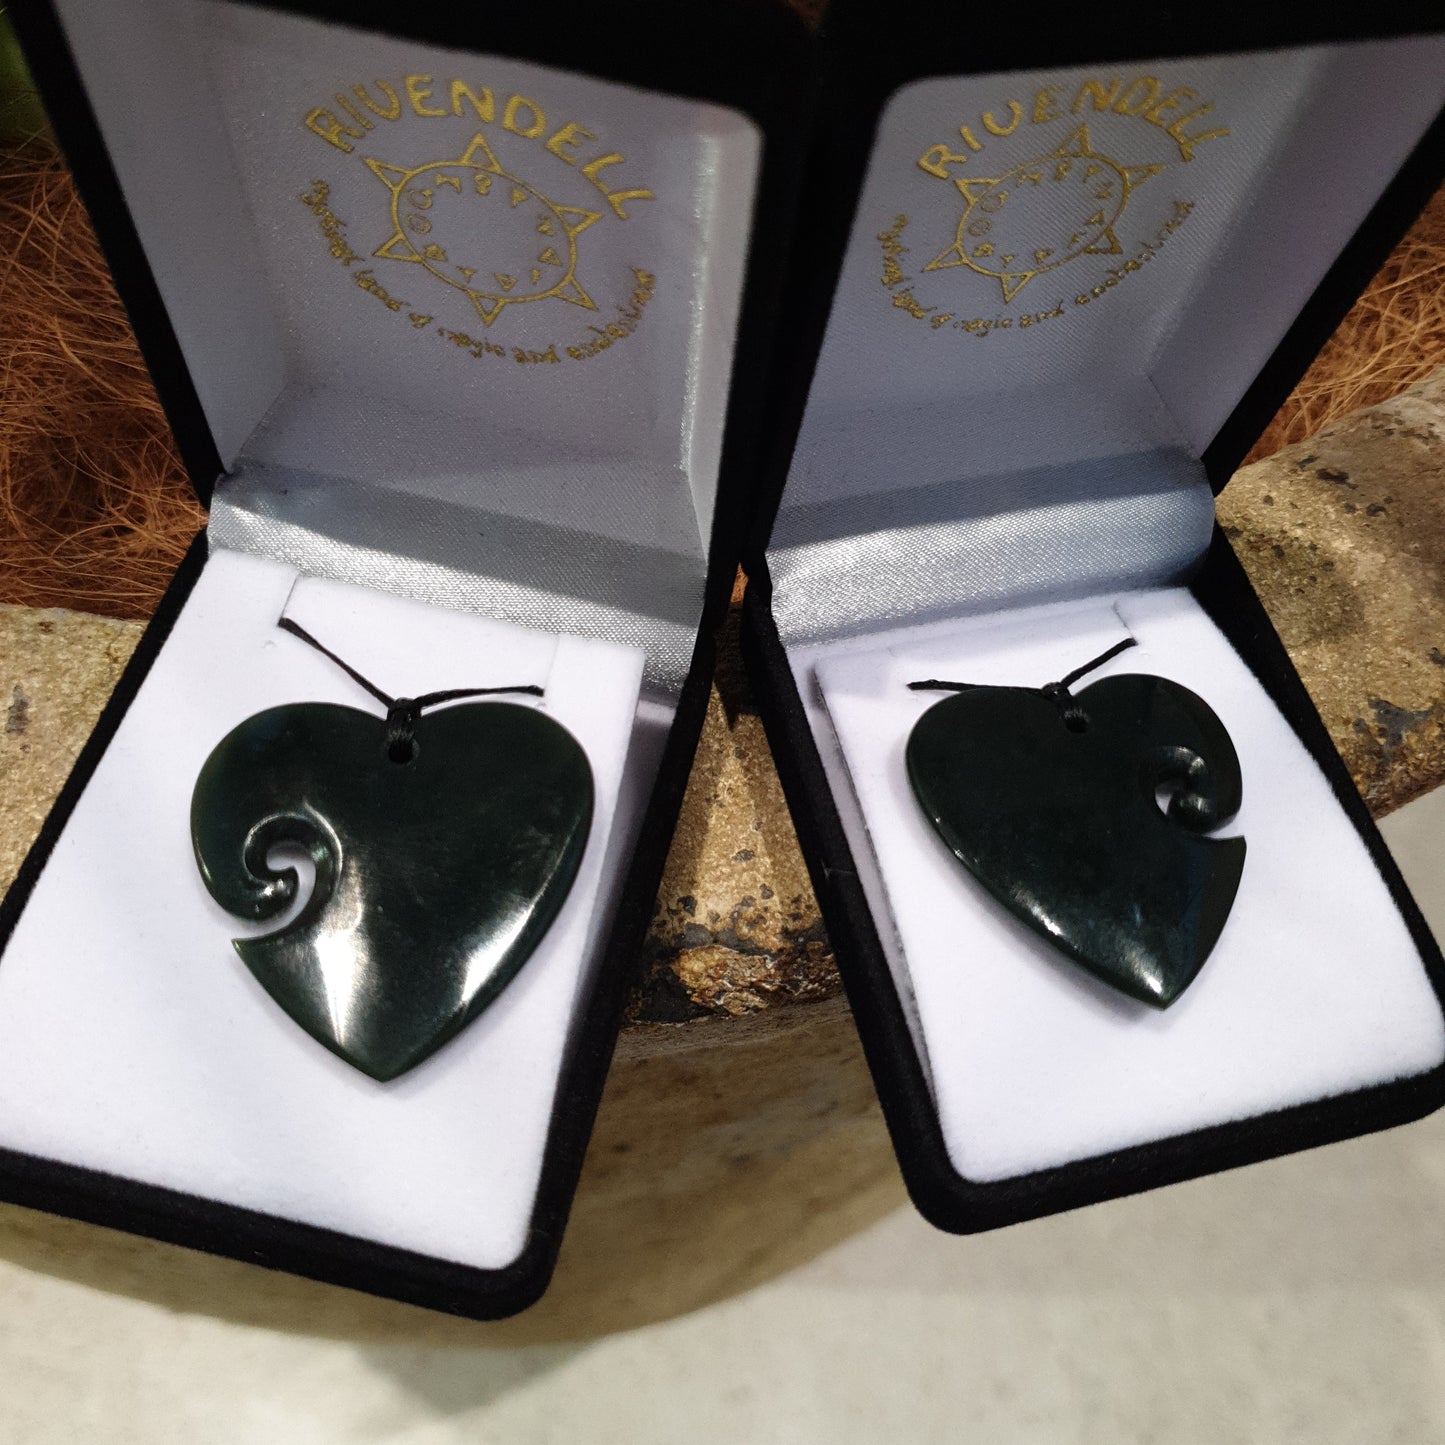 Heart Greenstone Pendant with Koru indentation - Rivendell Shop